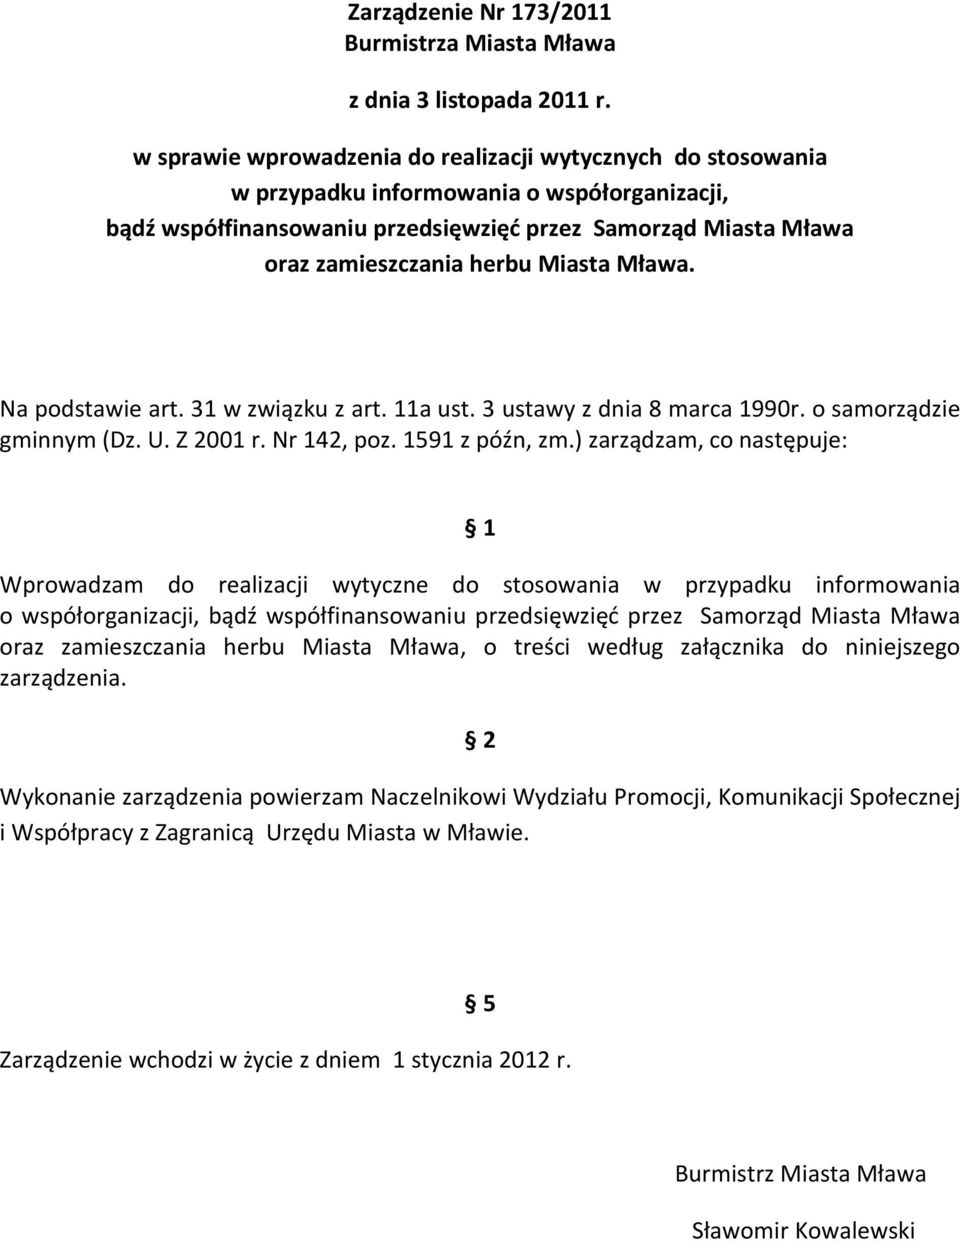 Miasta Mława. Na podstawie art. 31 w związku z art. 11a ust. 3 ustawy z dnia 8 marca 1990r. o samorządzie gminnym (Dz. U. Z 2001 r. Nr 142, poz. 1591 z późn, zm.